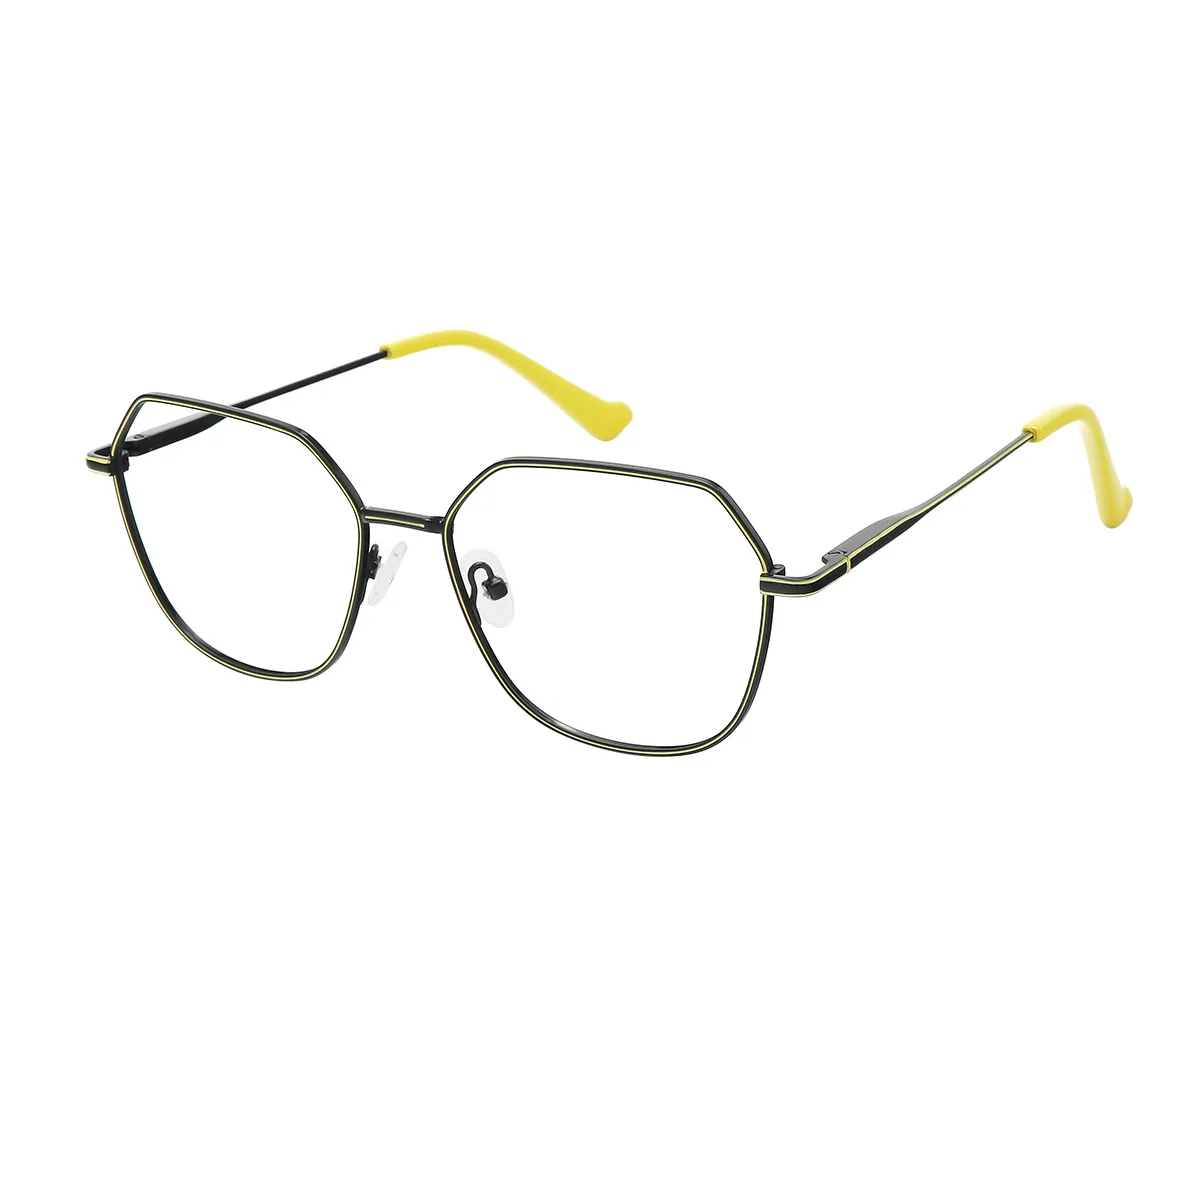 Fashion Square Black/Yellow Eyeglasses for Women